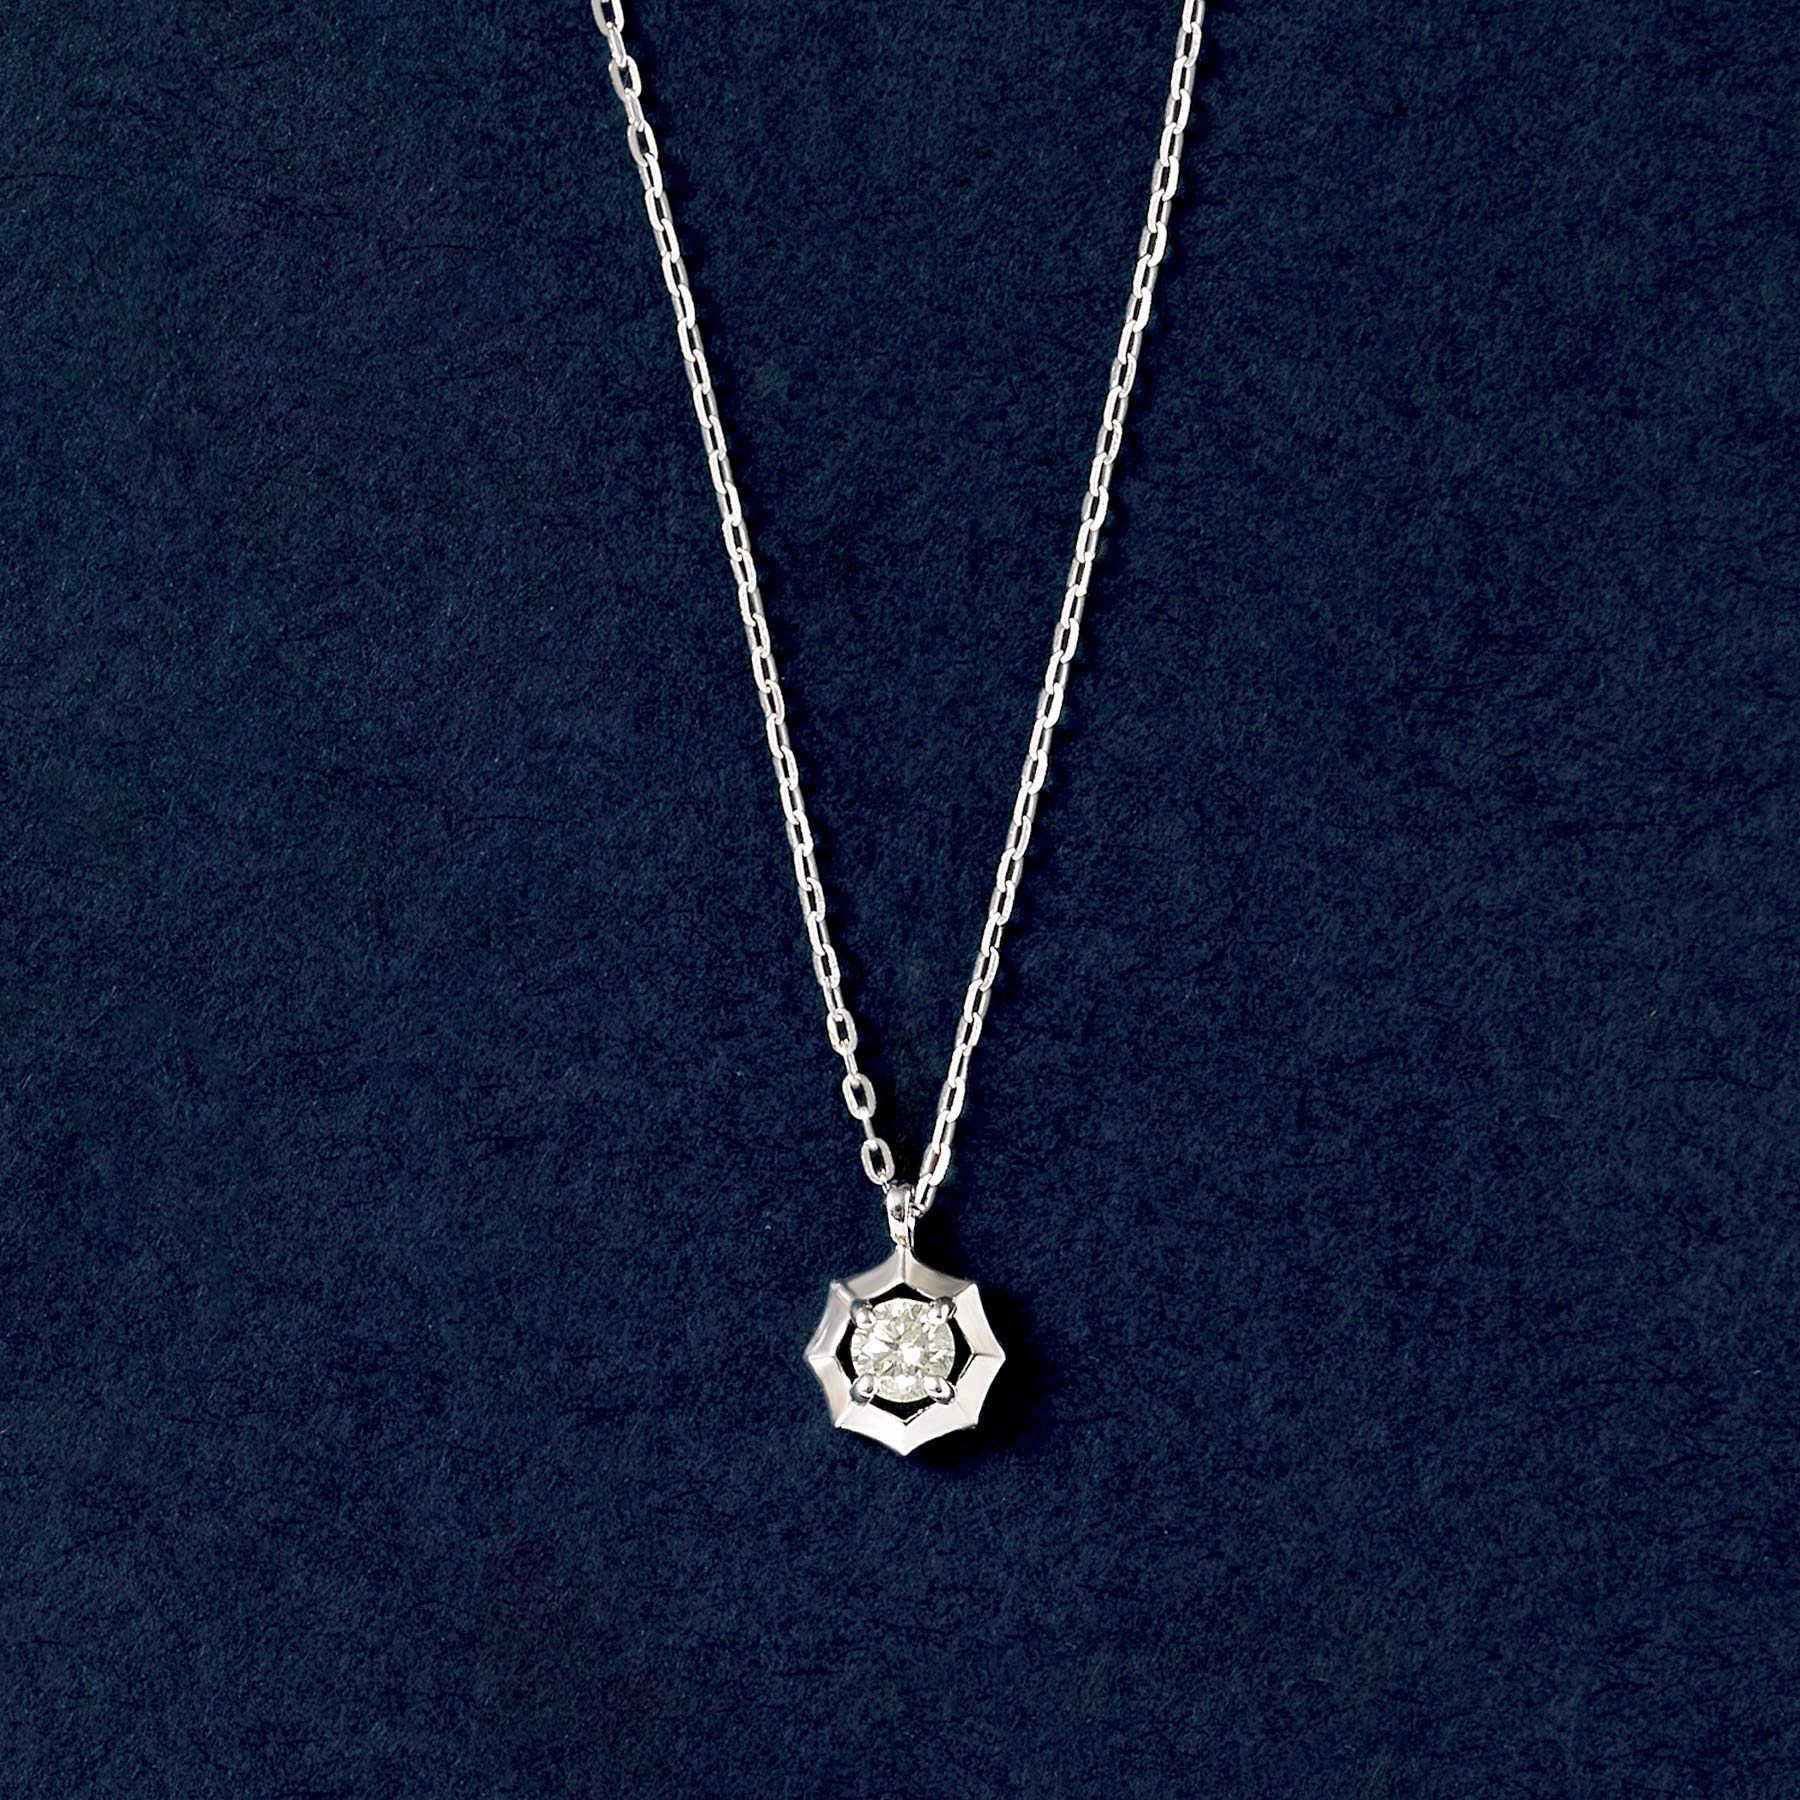 10K Diamond Aldebaran Necklace (White Gold) - Product Image